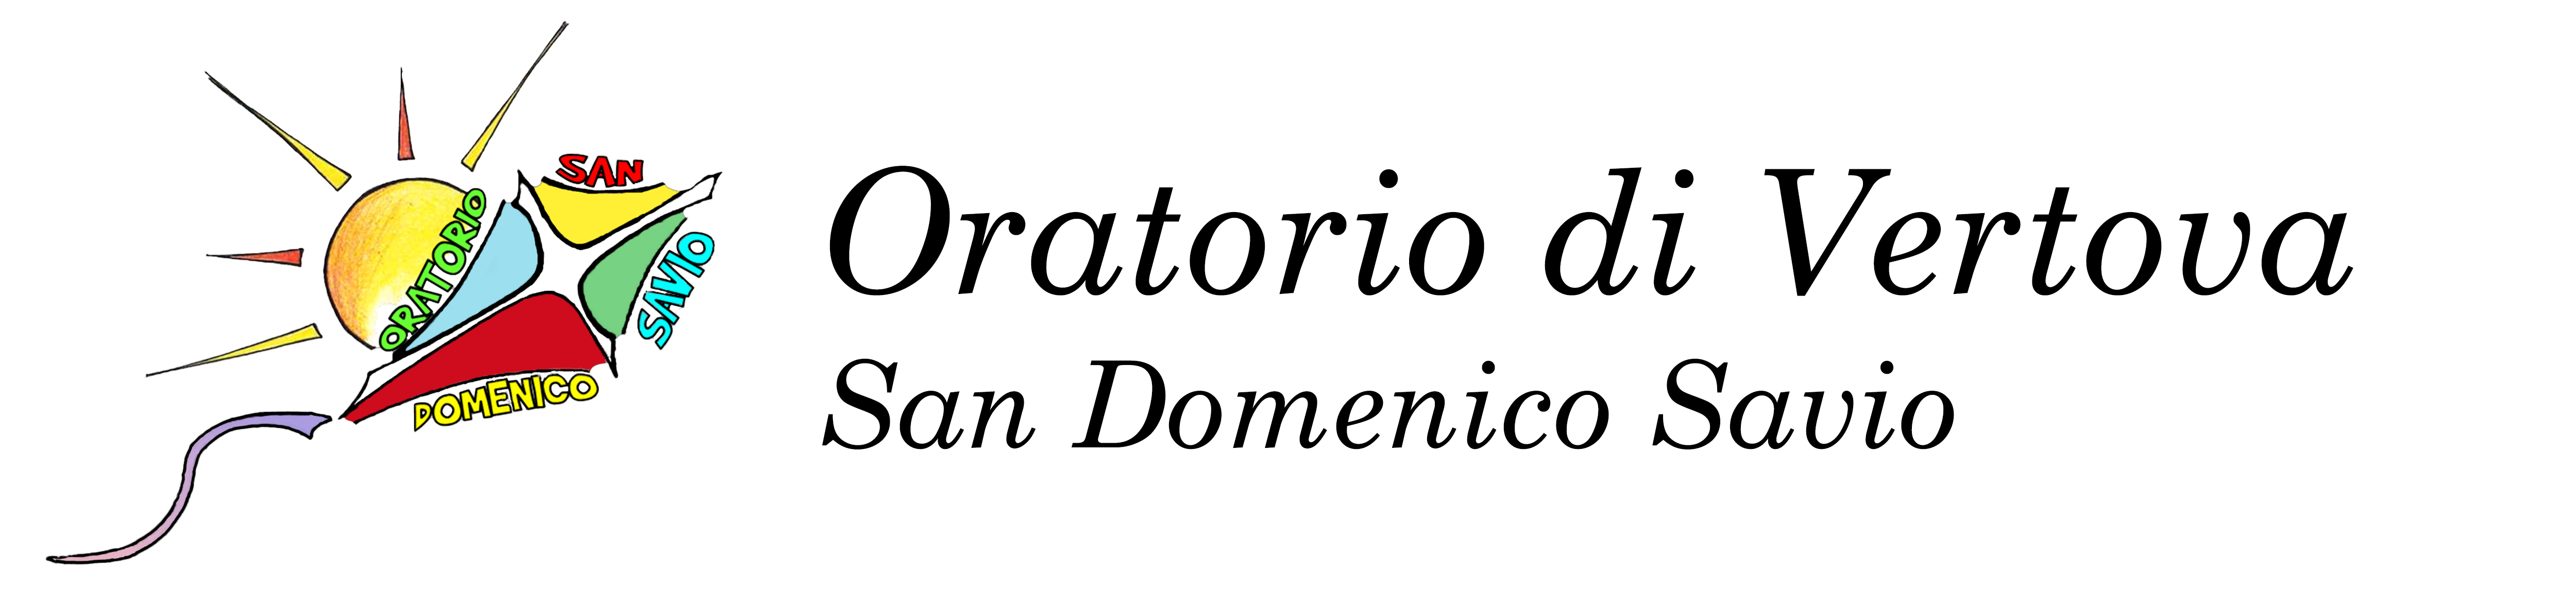 Oratorio di Vertova – San Domenico Savio